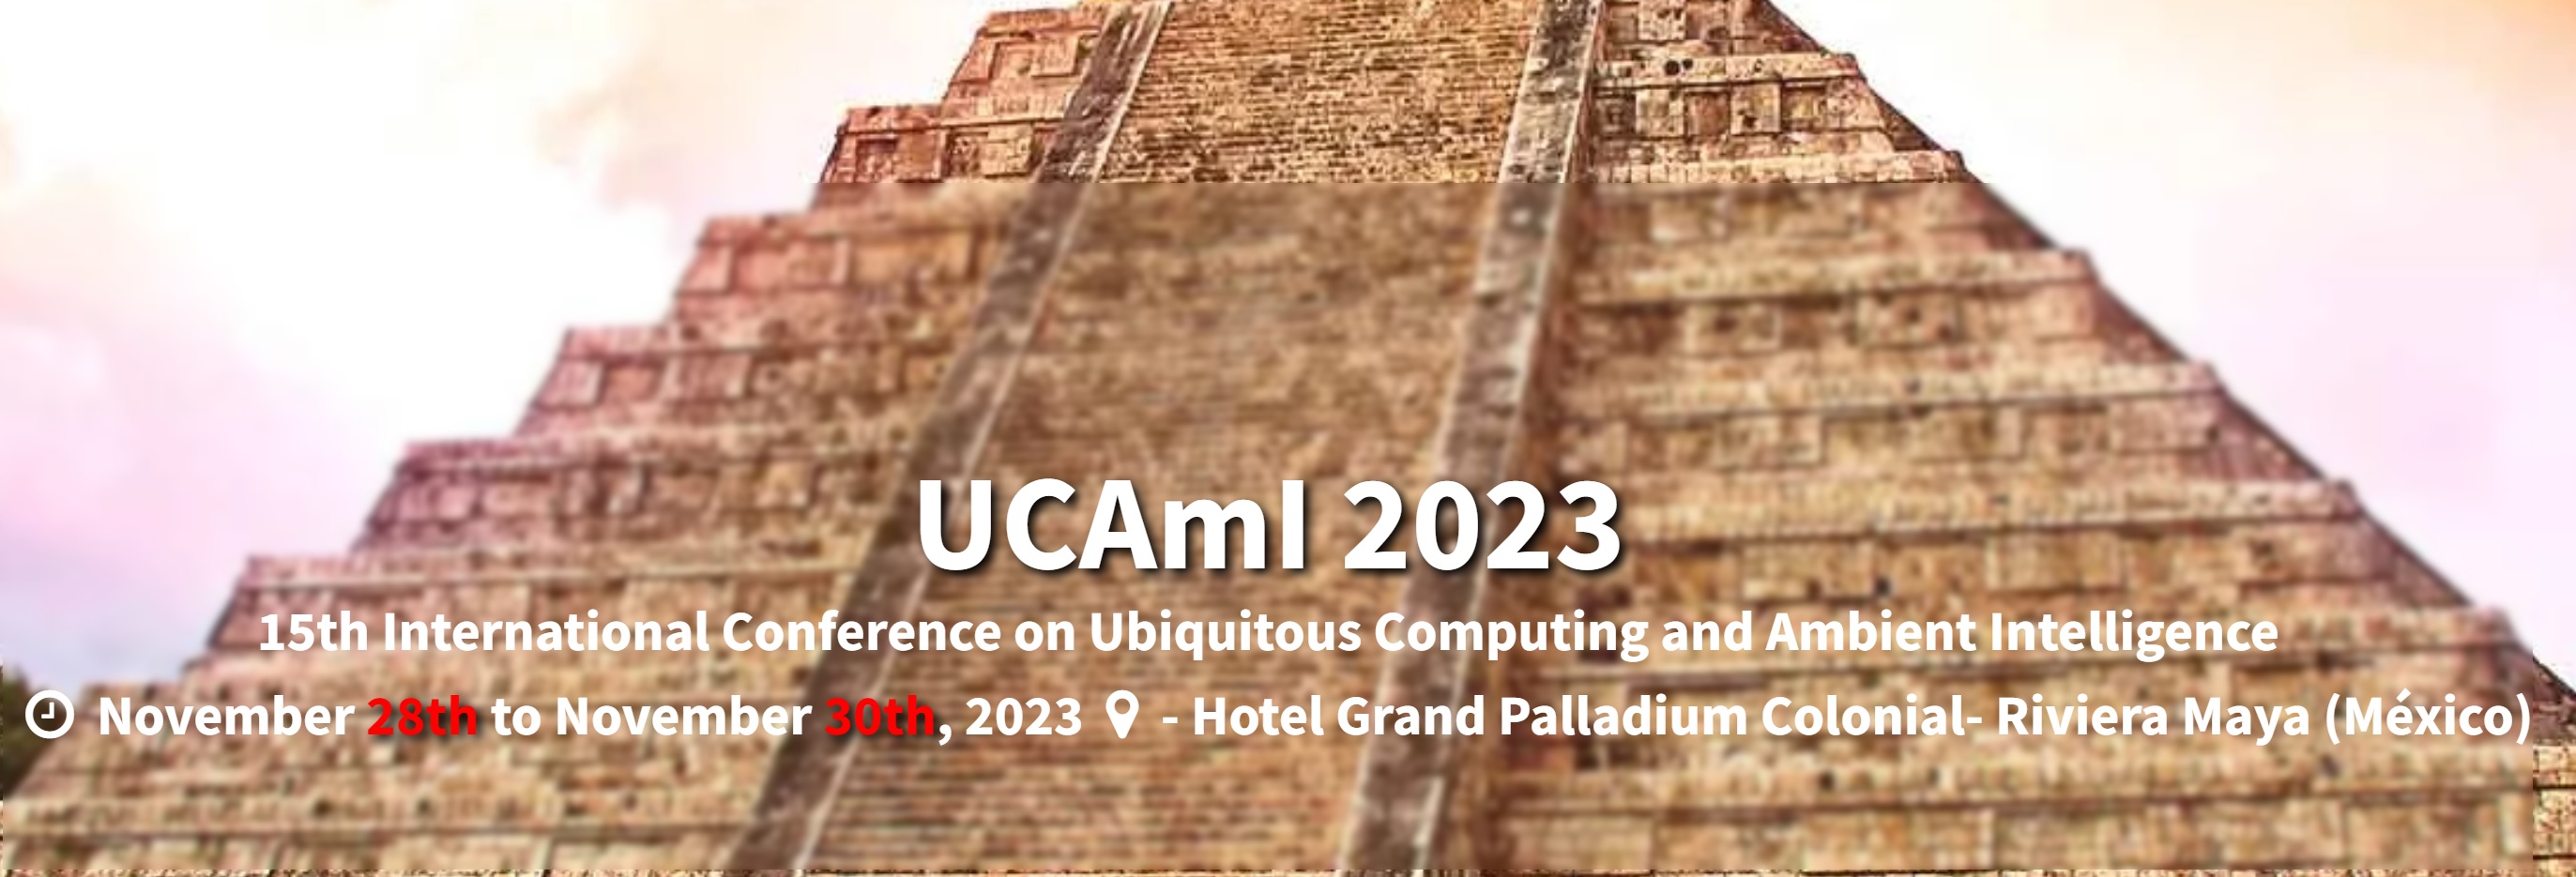 Conferencia UCAmI 2023